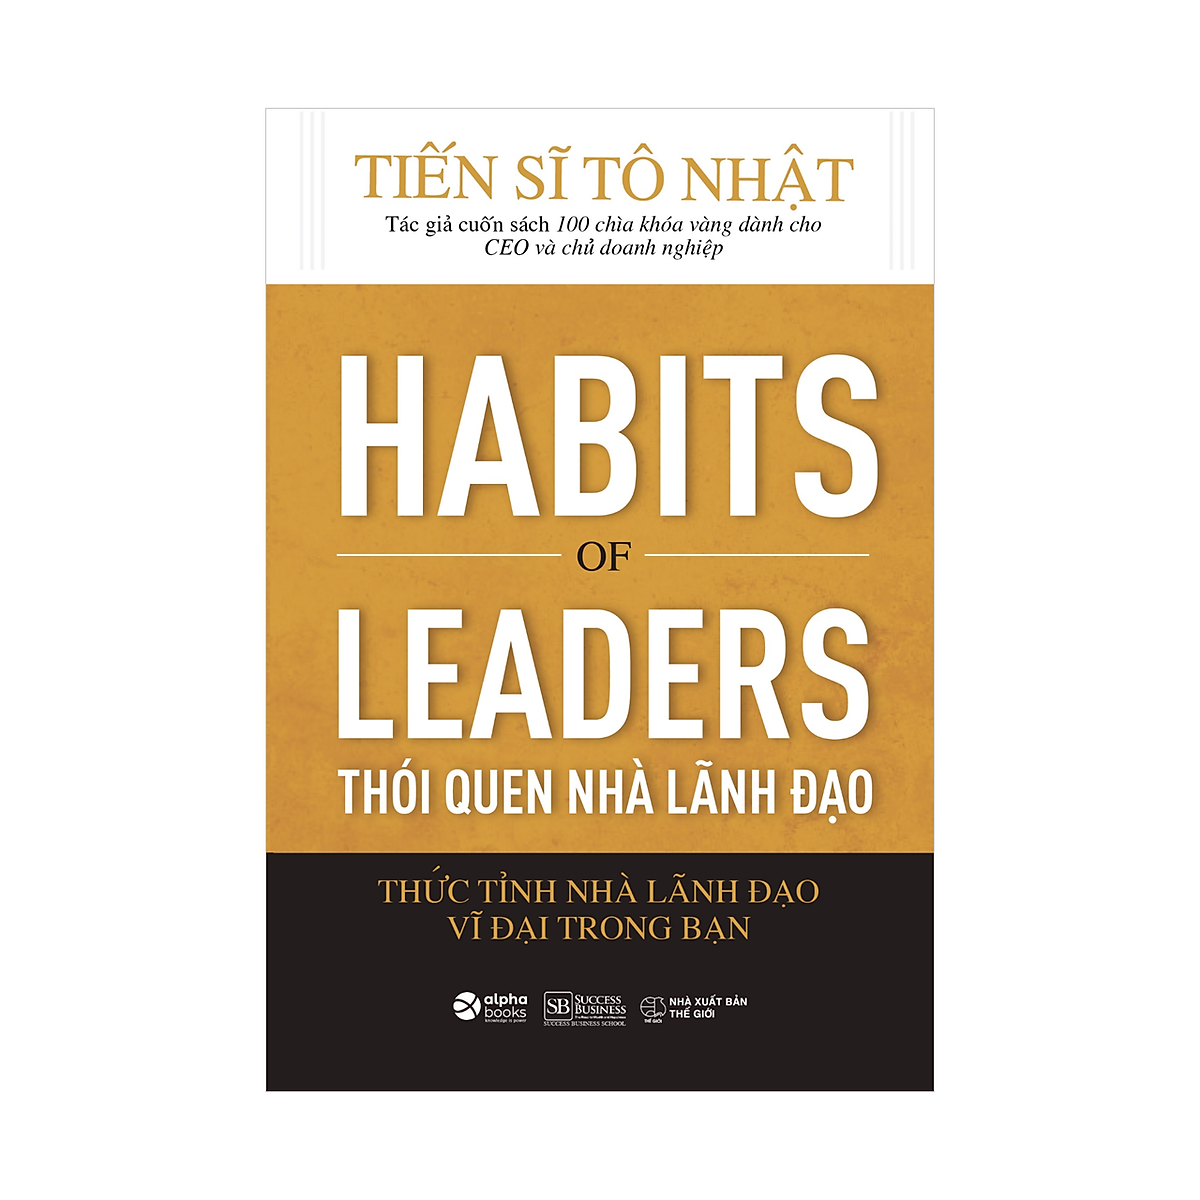 Habits of Leaders - Thói Quen Nhà Lãnh Đạo